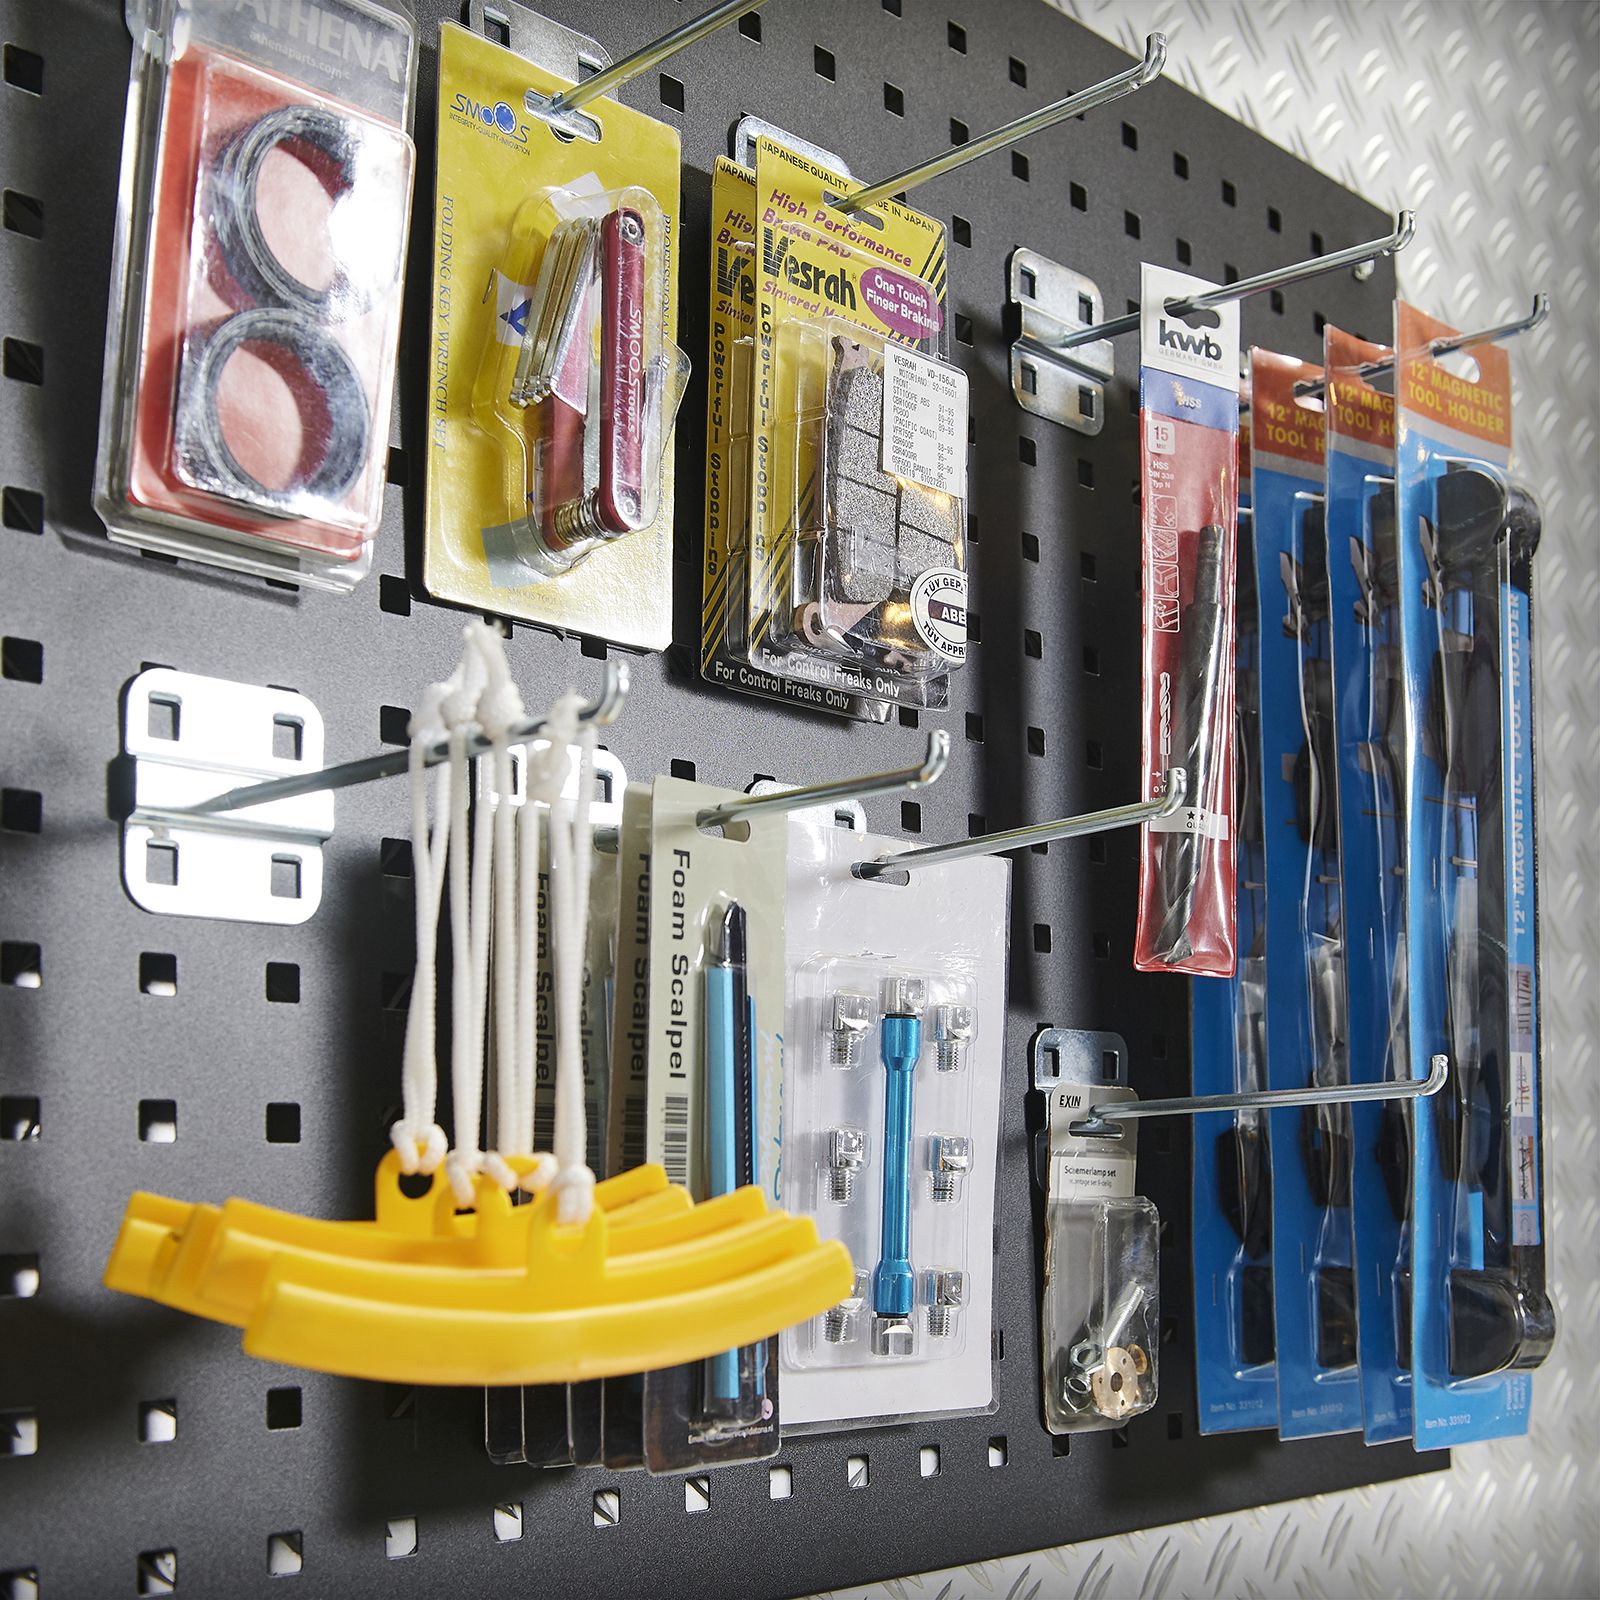 Tools voor werkplaats ophangen aan gatenbord